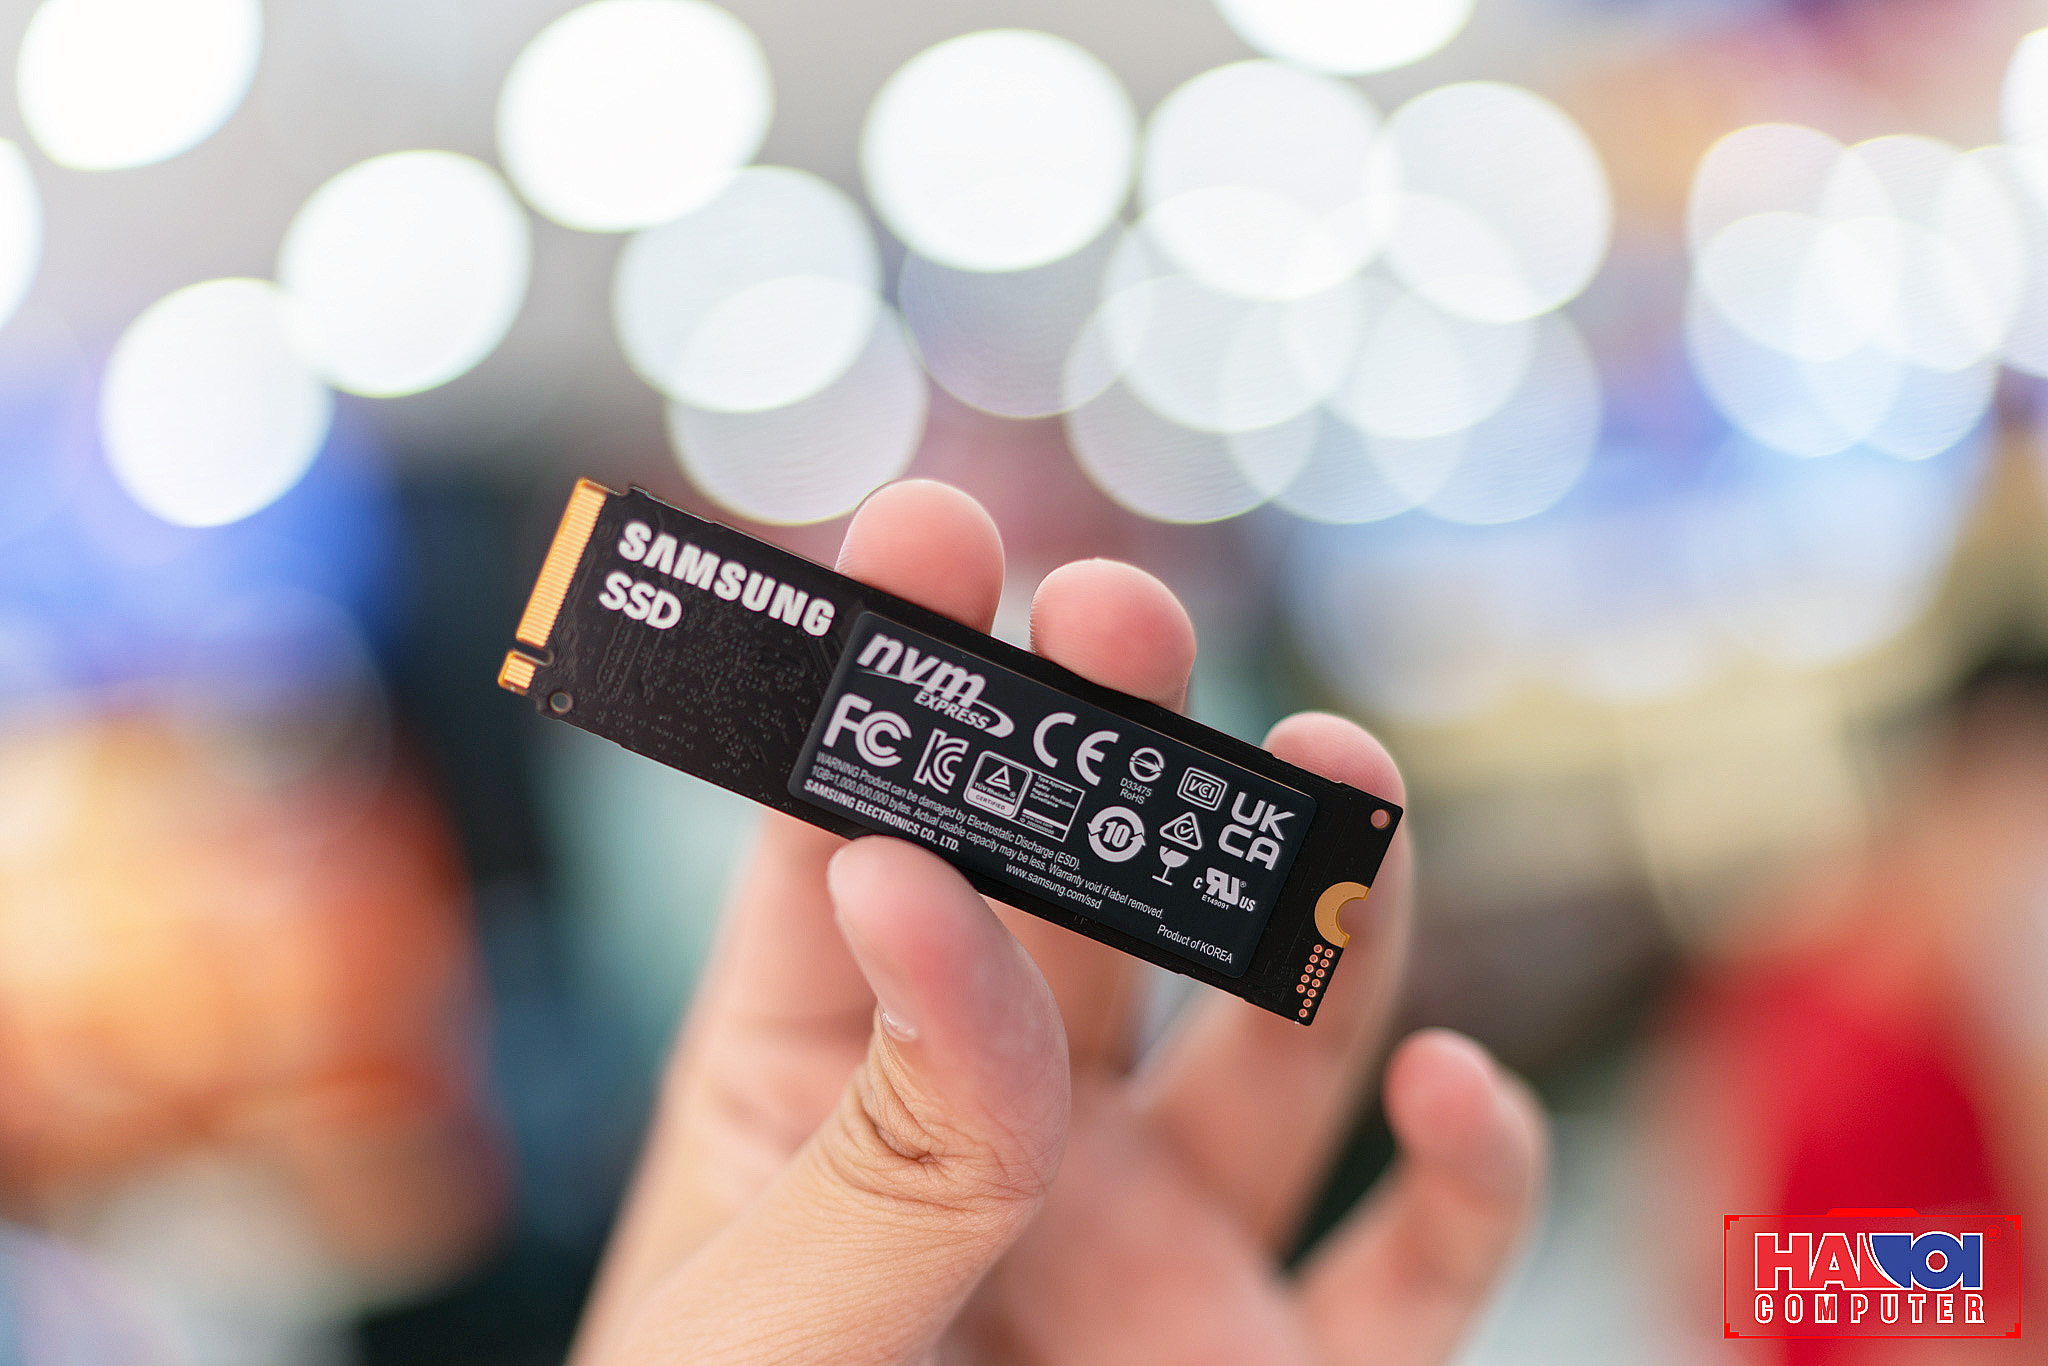 Ổ cứng SSD Samsung 980 1TB PCIe NVMe 3.0x4